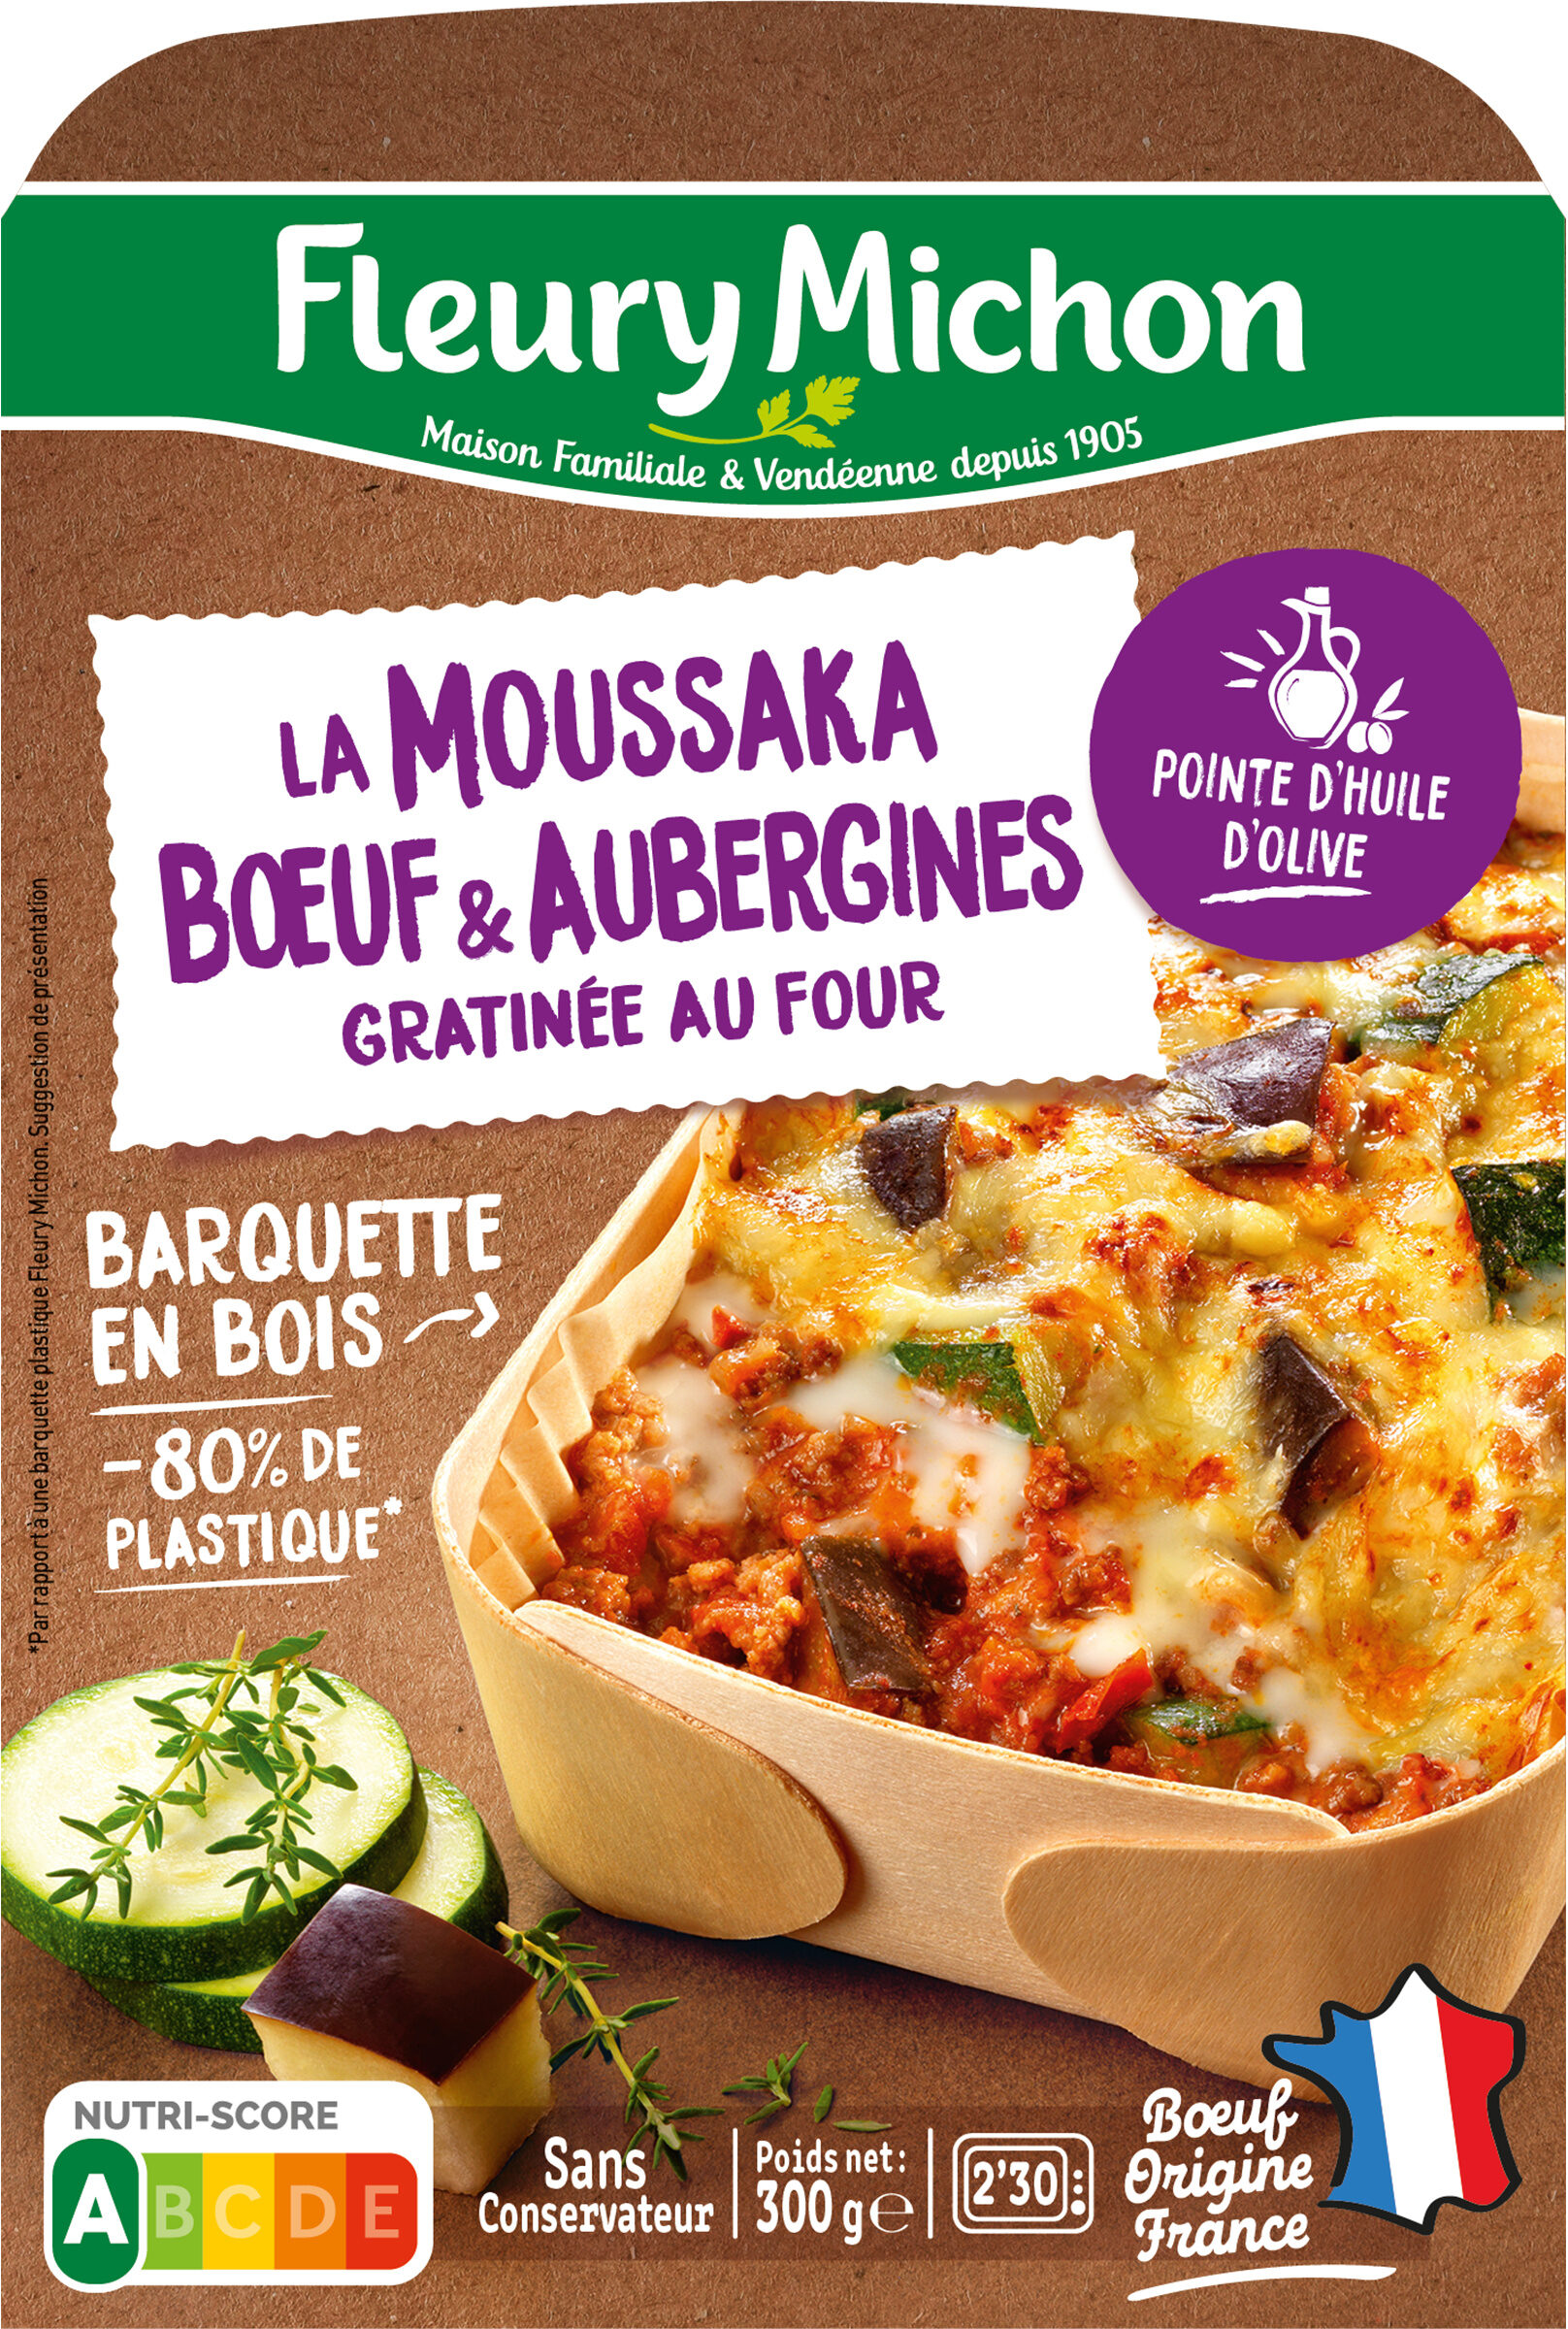 La Moussaka Boeuf & Aubergines avec une touche de menthe douce - Produkt - fr